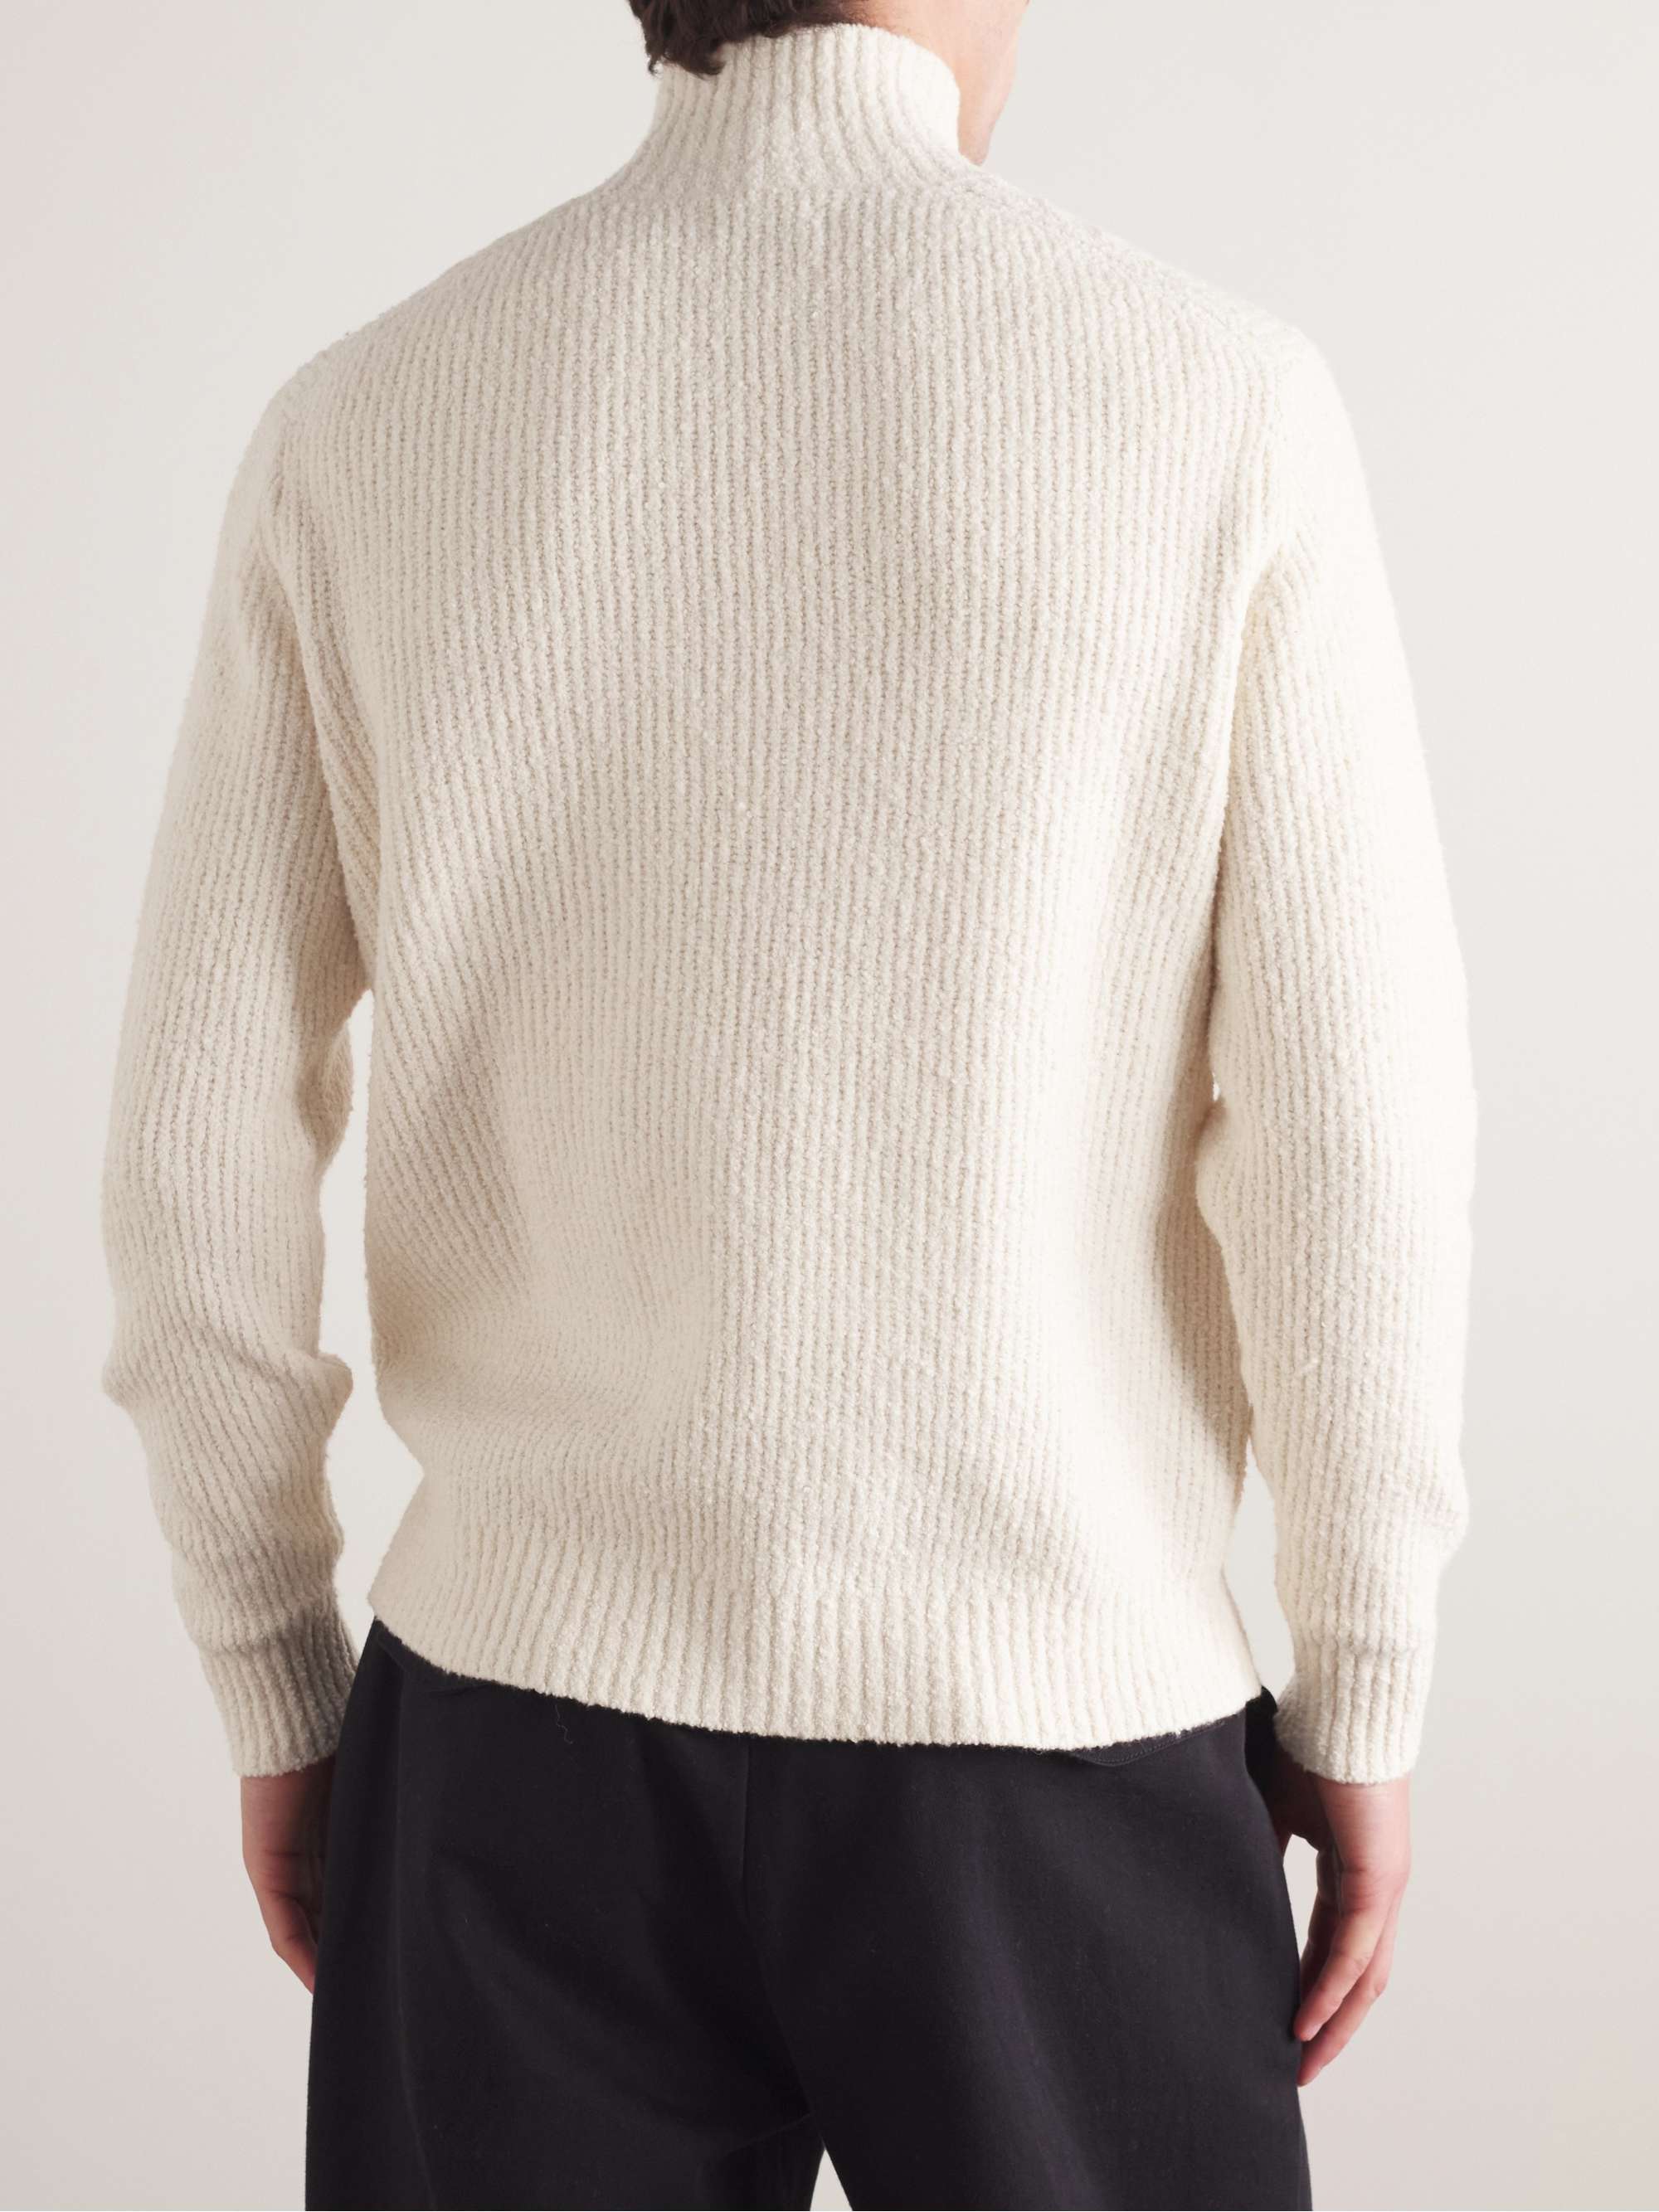 CLUB MONACO Cotton-Blend Bouclé Mock-Neck Sweater for Men | MR PORTER